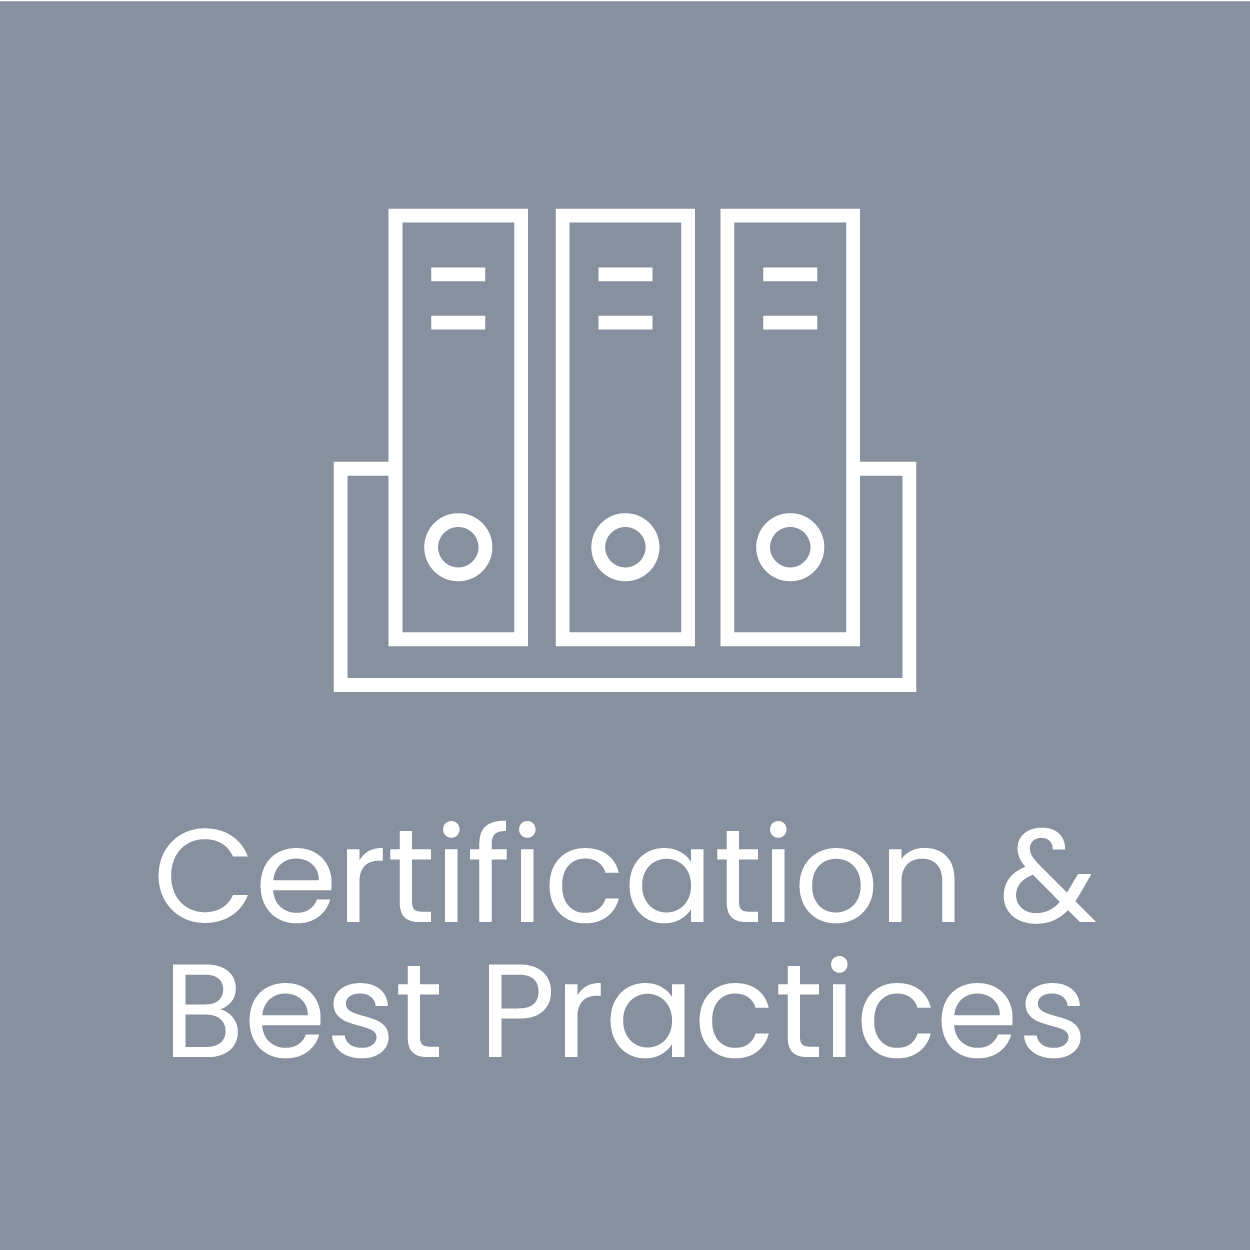 Certification & Best Practices